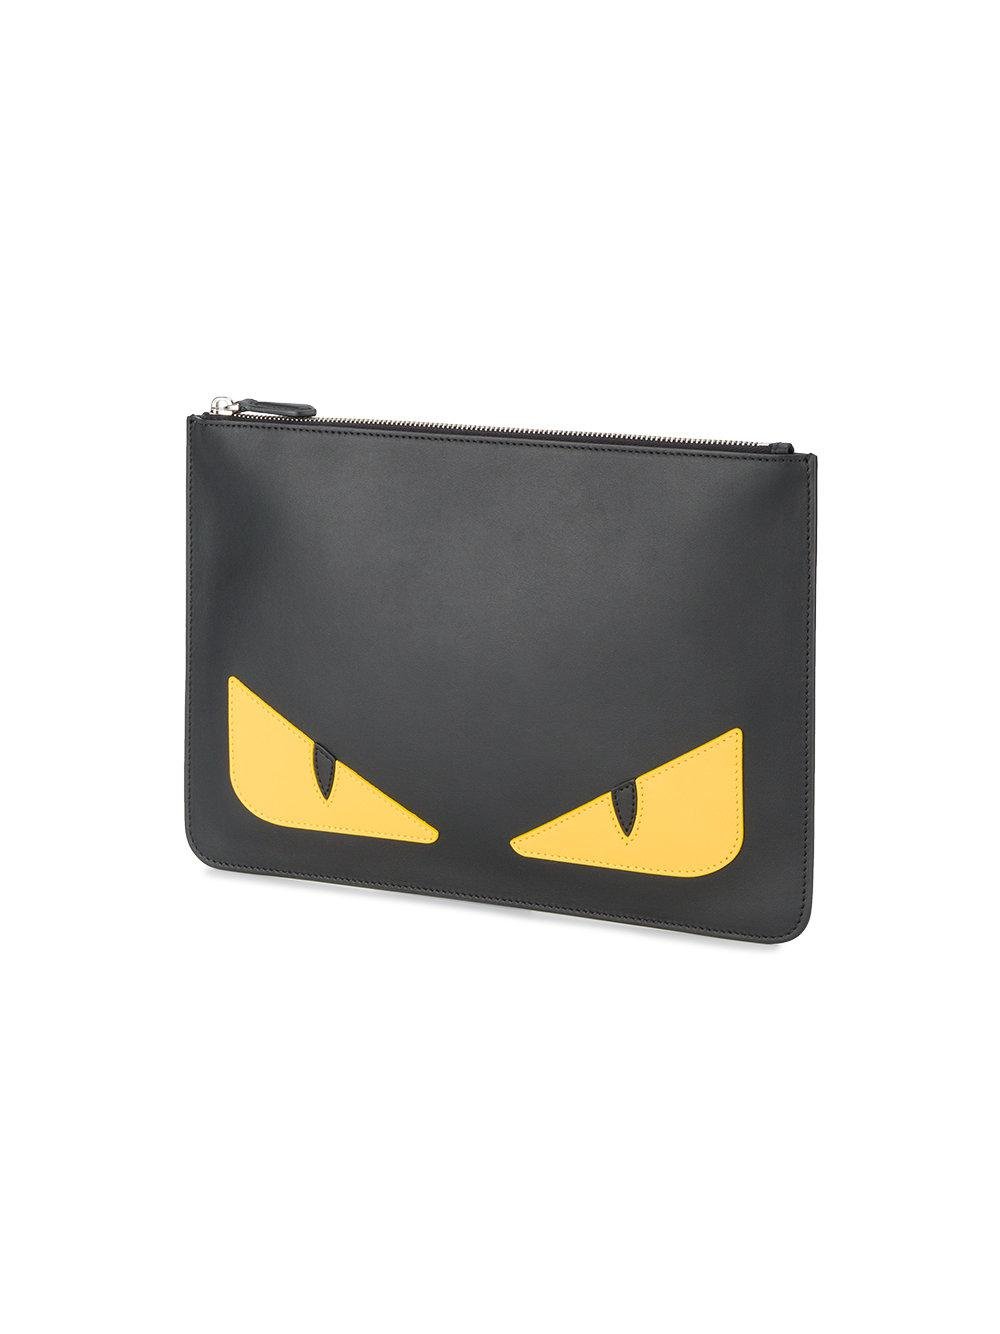 Fendi bag vintage FF zucca print handbag pouchette black pochette purse |  eBay